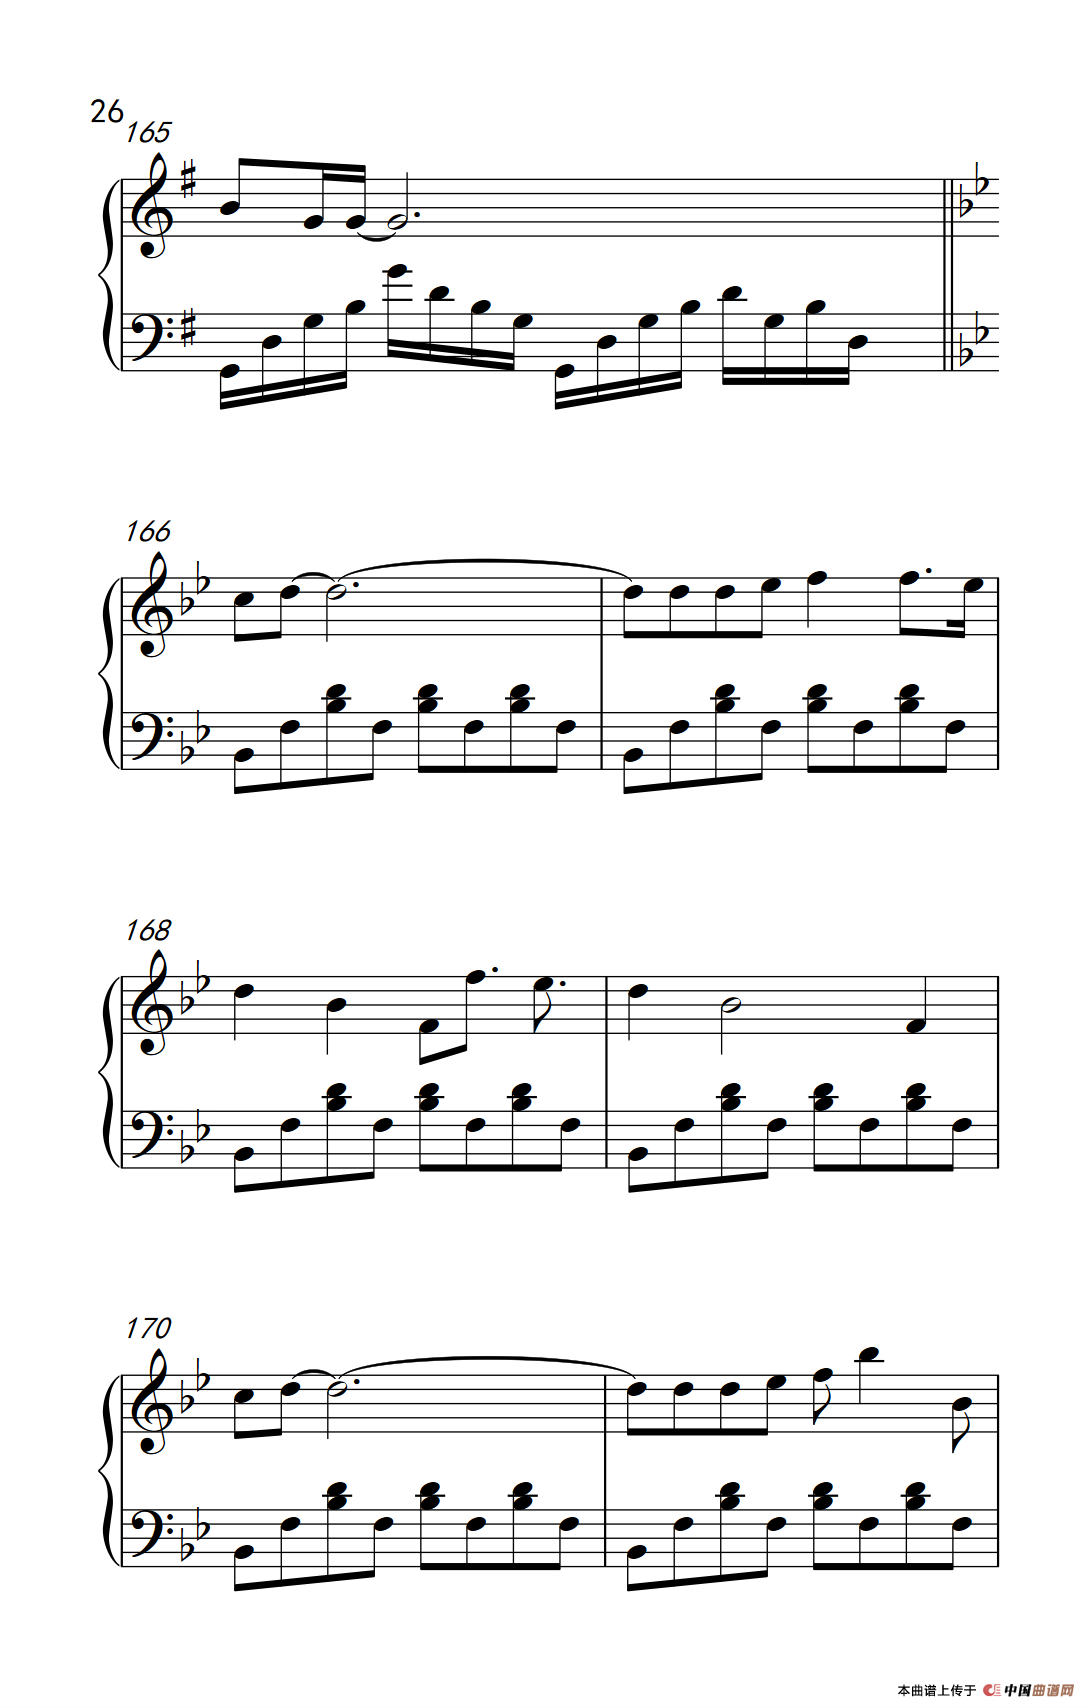 《情歌王》钢琴曲谱图分享